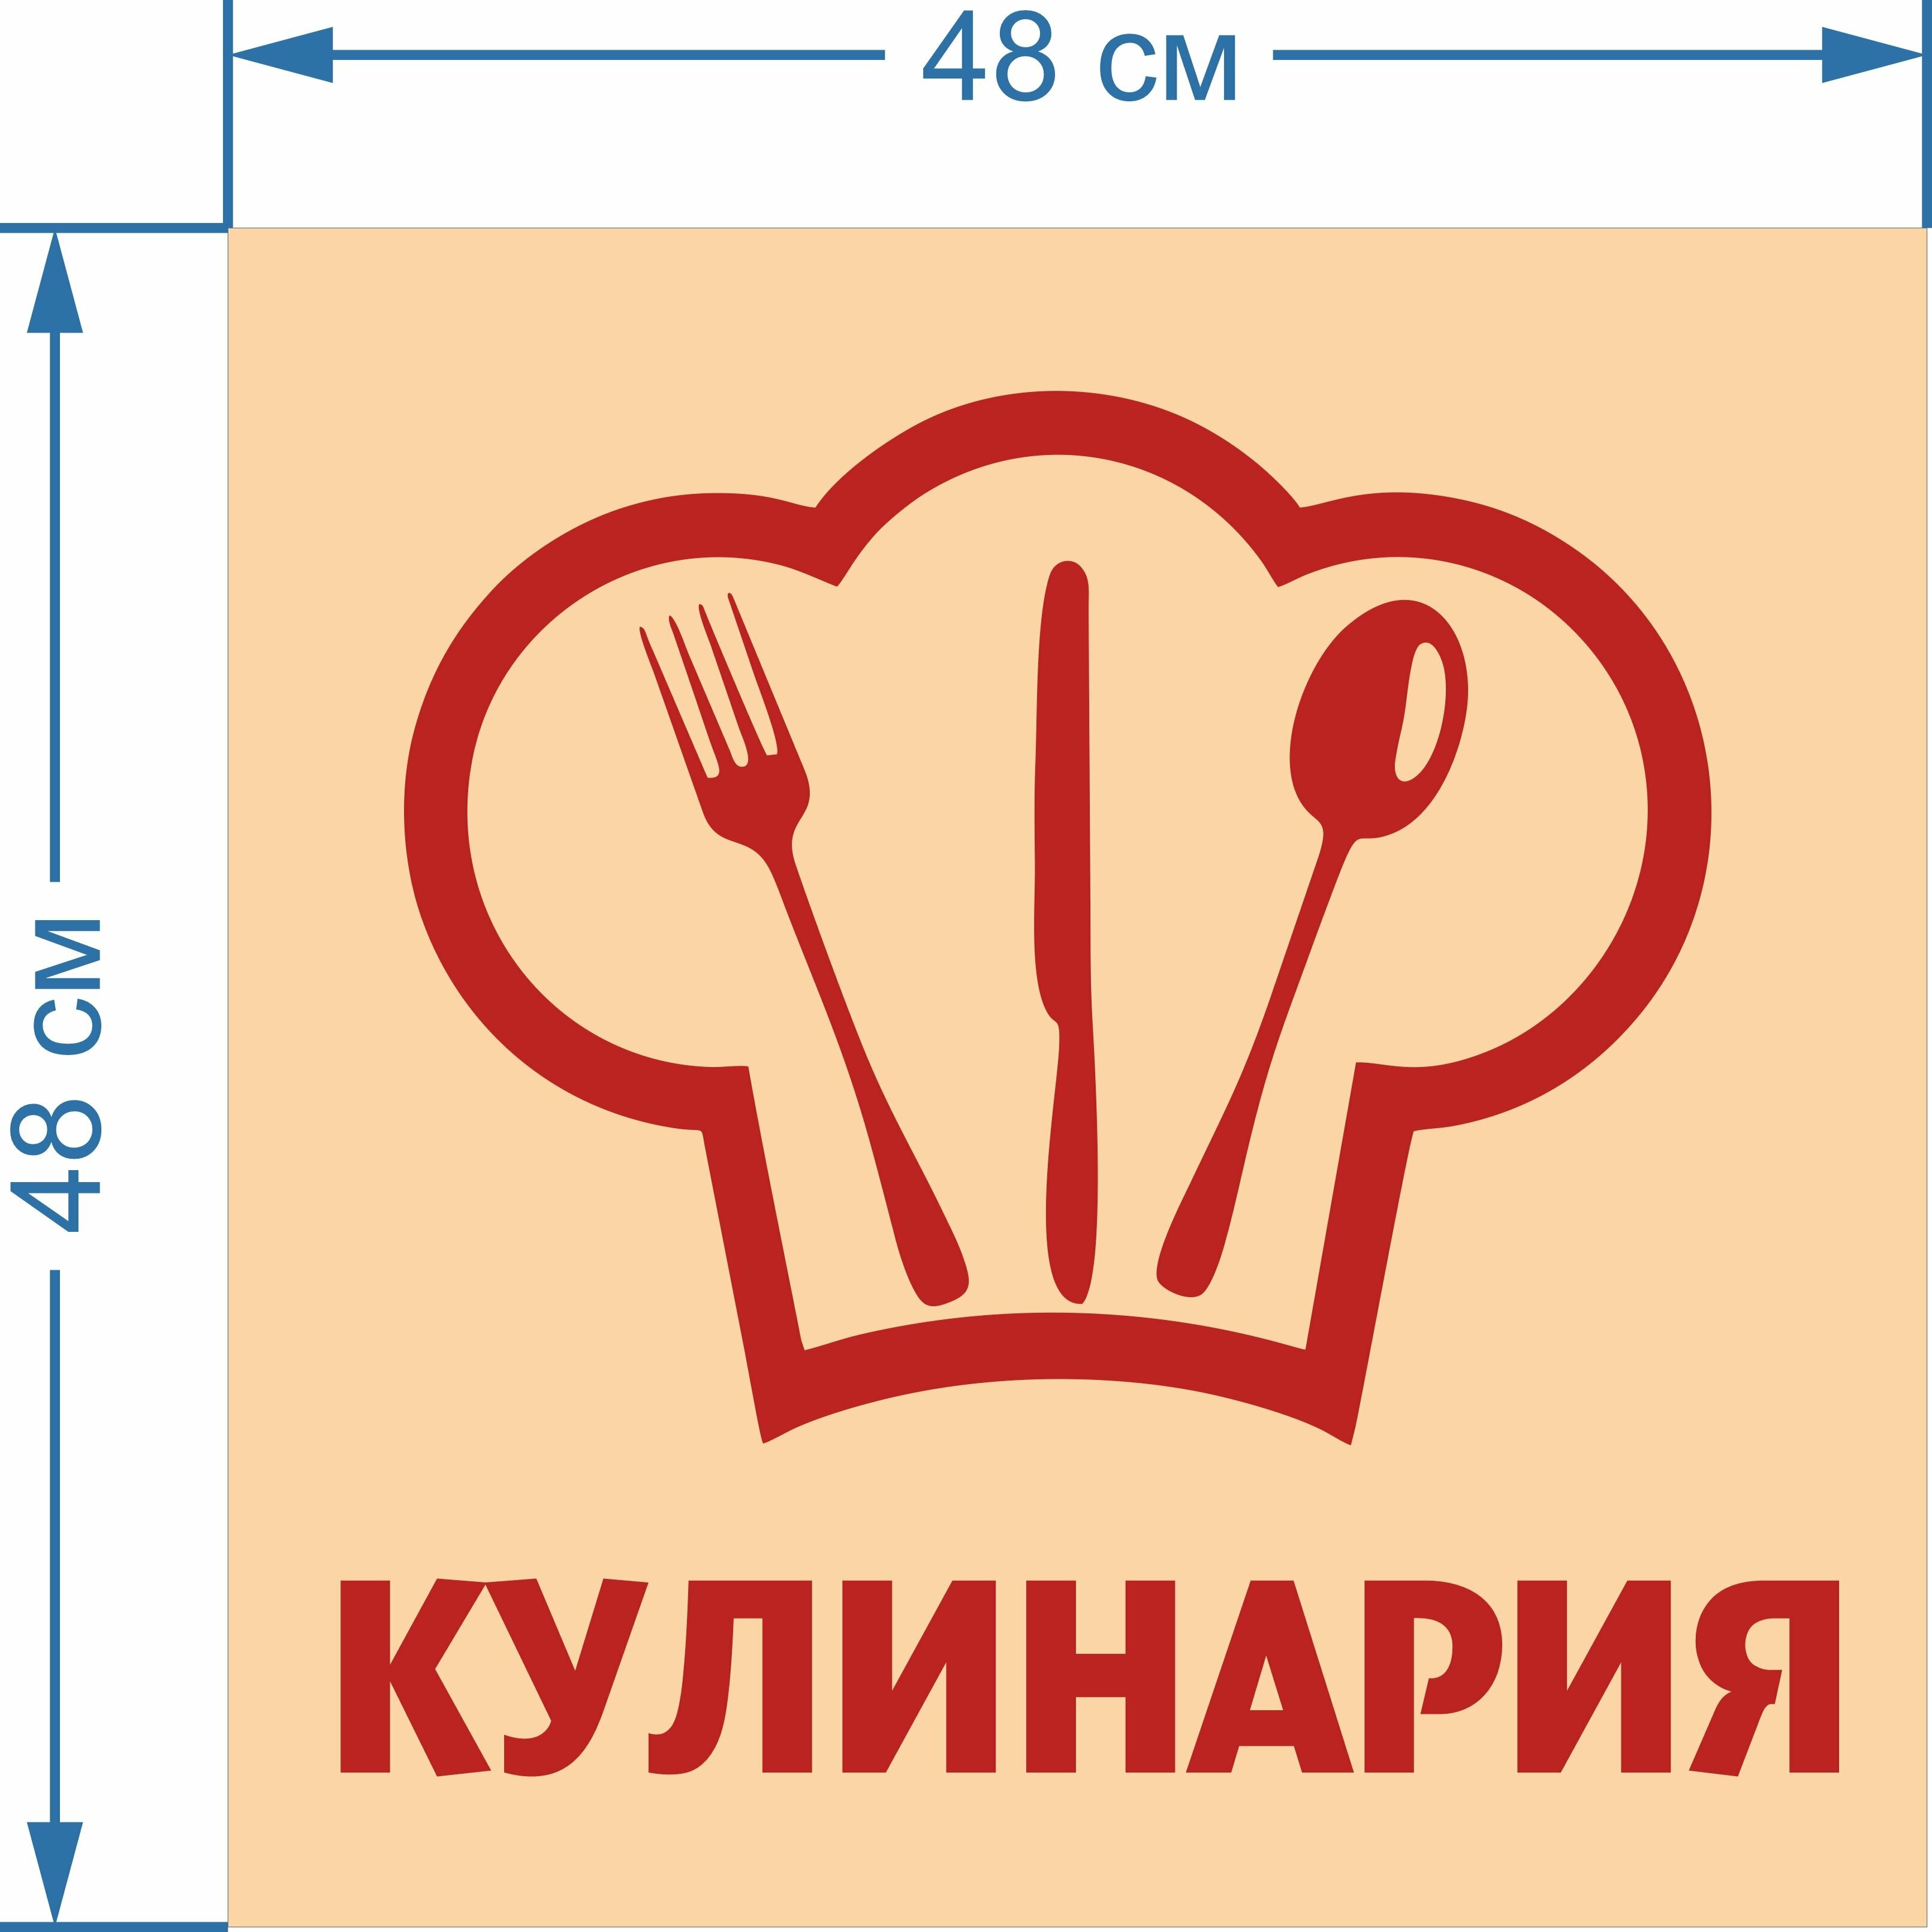 Световая вывеска "Кулинария" Объемный короб с подсветкой Лайтбокс квадратный